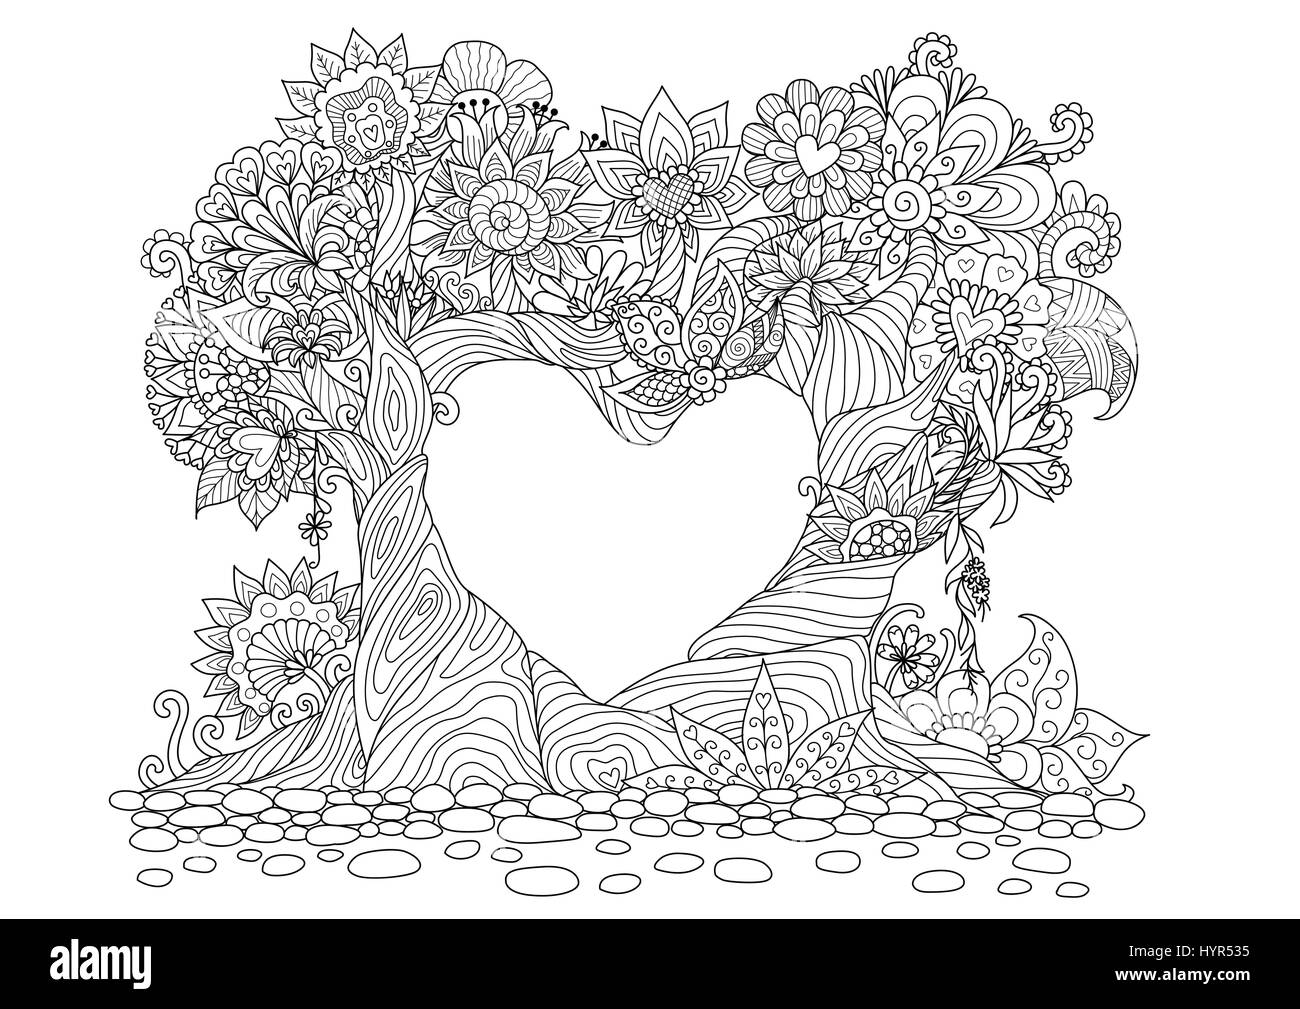 https://c8.alamy.com/compes/hyr535/la-coloracion-amor-pagina-vector-abstracto-libro-dia-bosque-concentricos-arbol-decoracion-impresion-tribal-floral-blanco-mandala-ornamento-flor-adul-hyr535.jpg